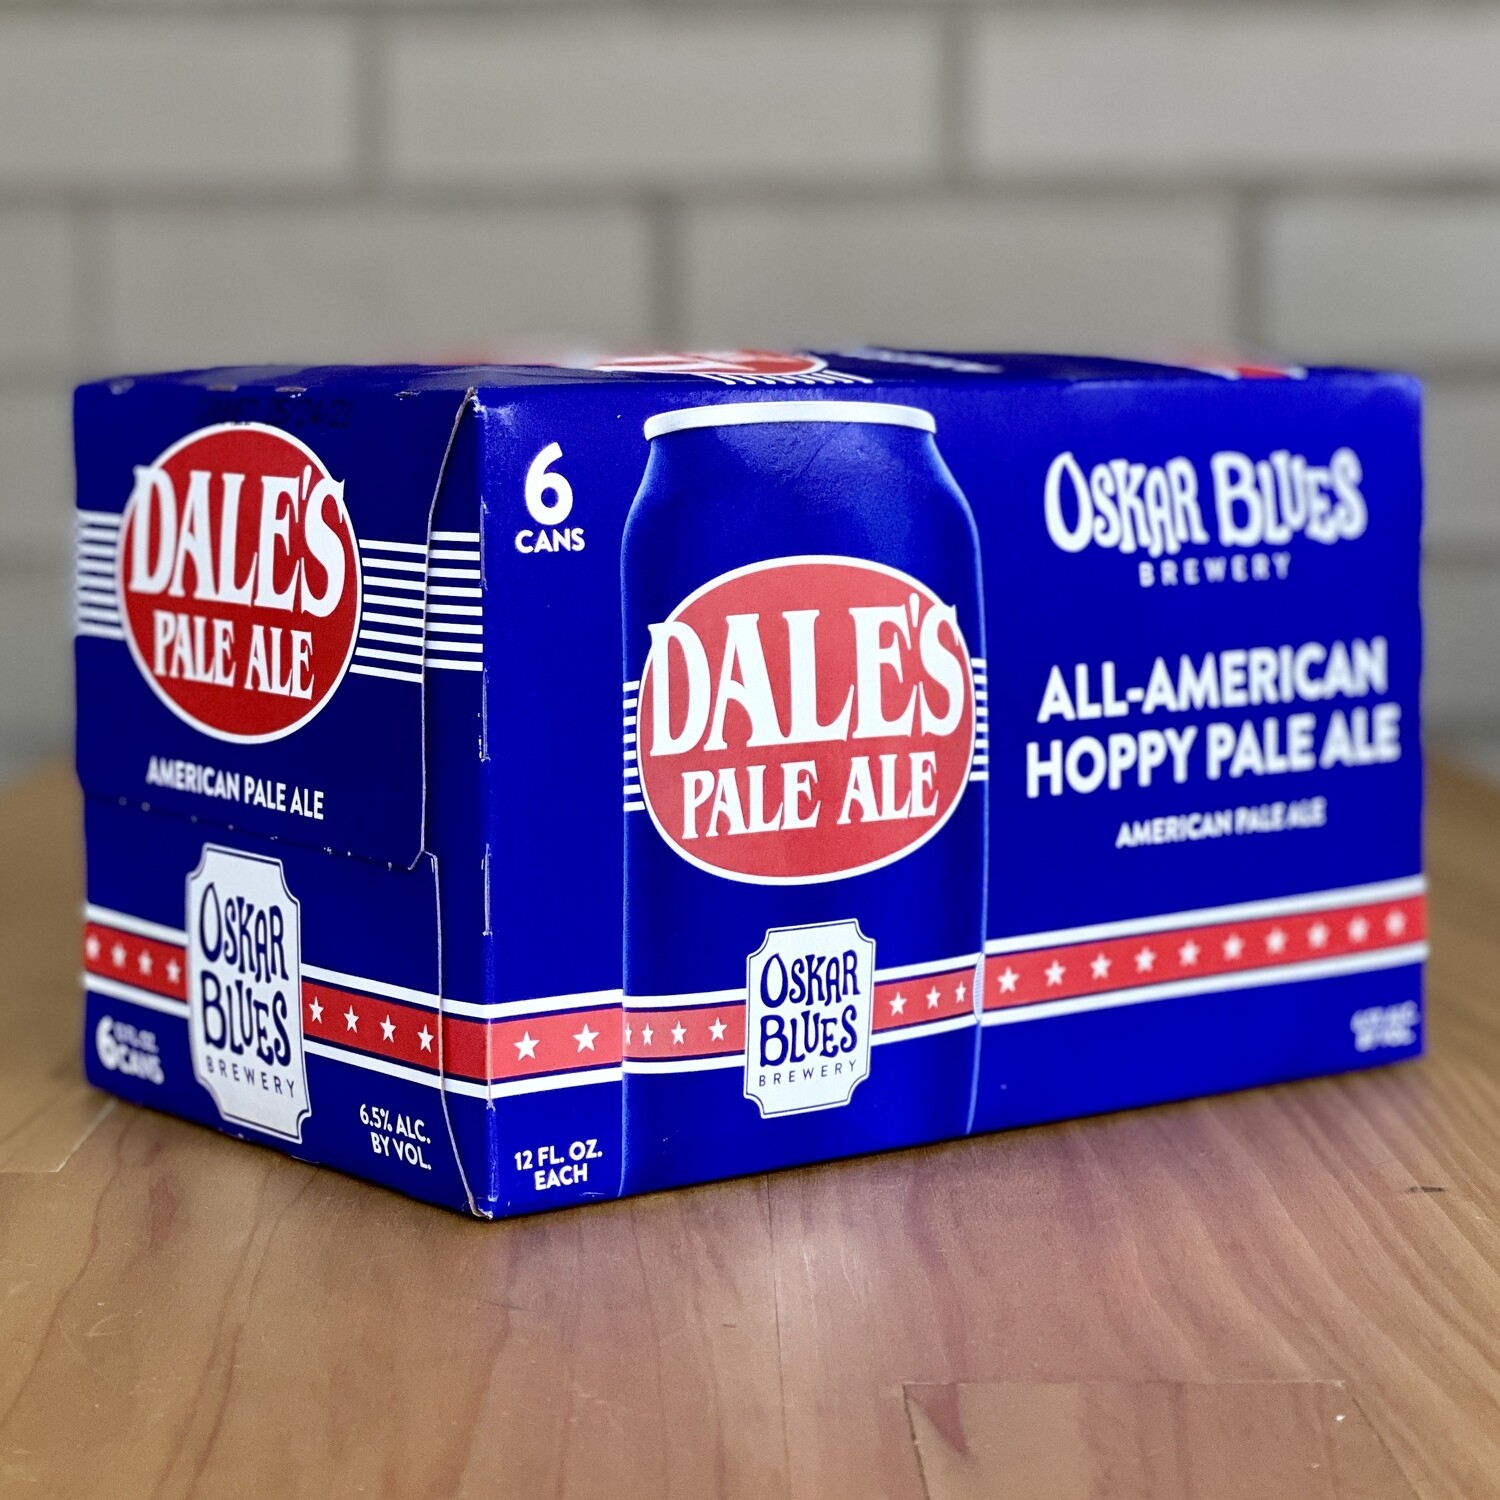 Oskar Blues Dale's Pale Ale (6pk)